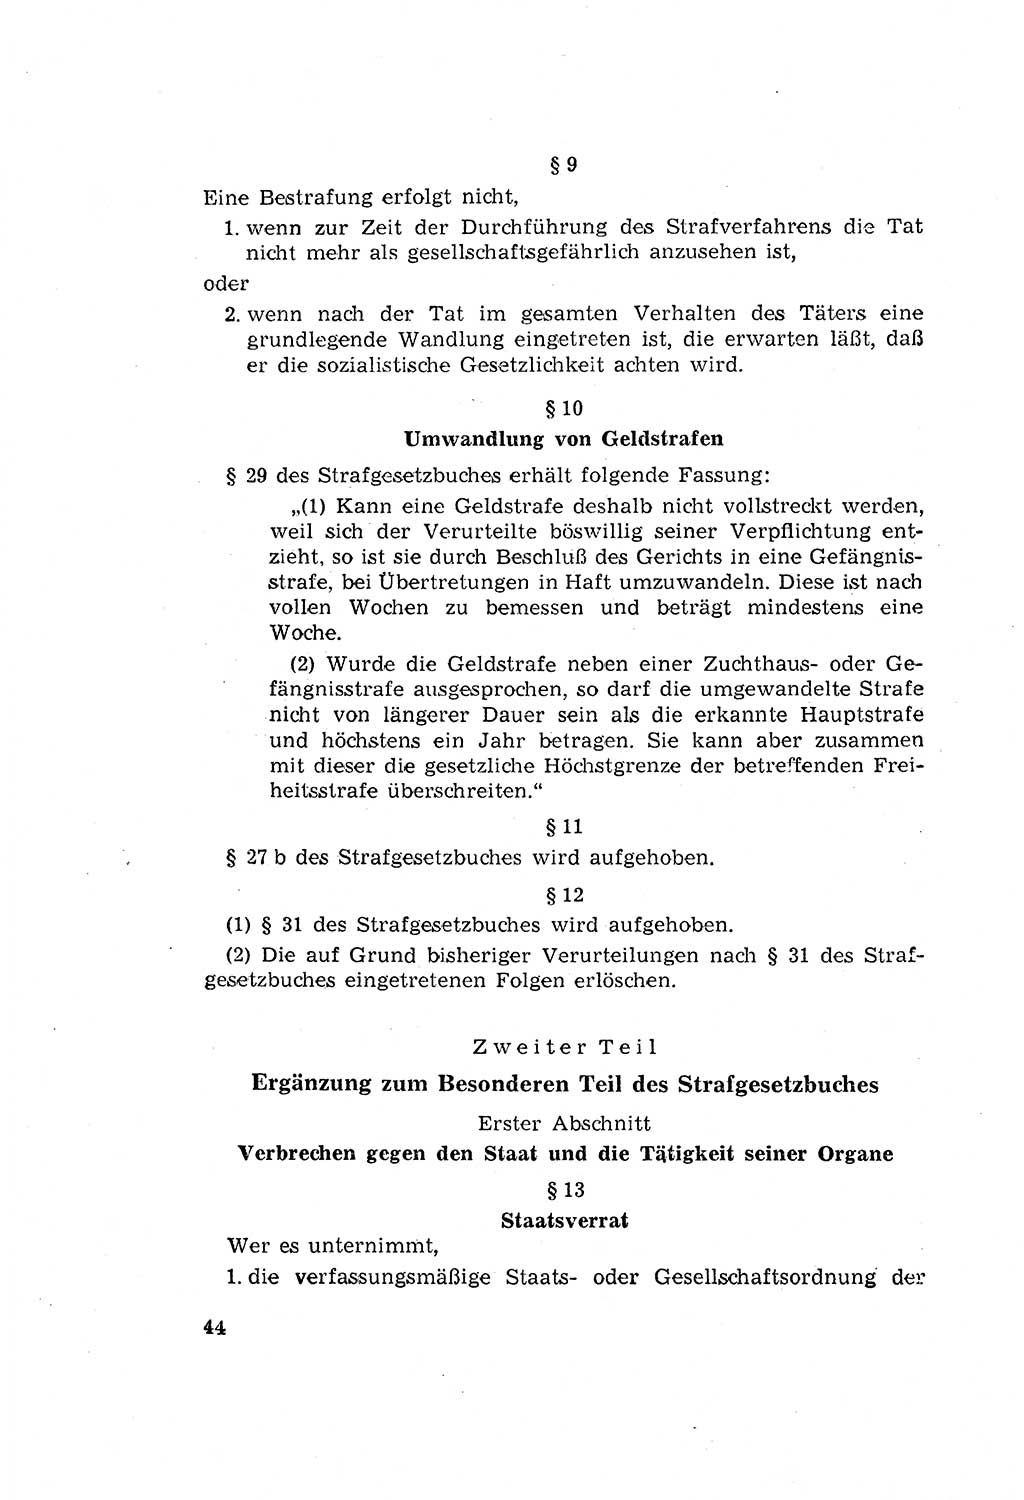 Zum Erlaß des Gesetzes zur Ergänzung des Strafgesetzbuches (StGB), Strafergänzungsgesetz (StEG) [Deutsche Demokratische Republik (DDR)] 1957, Seite 44 (StGB StEG DDR 1957, S. 44)